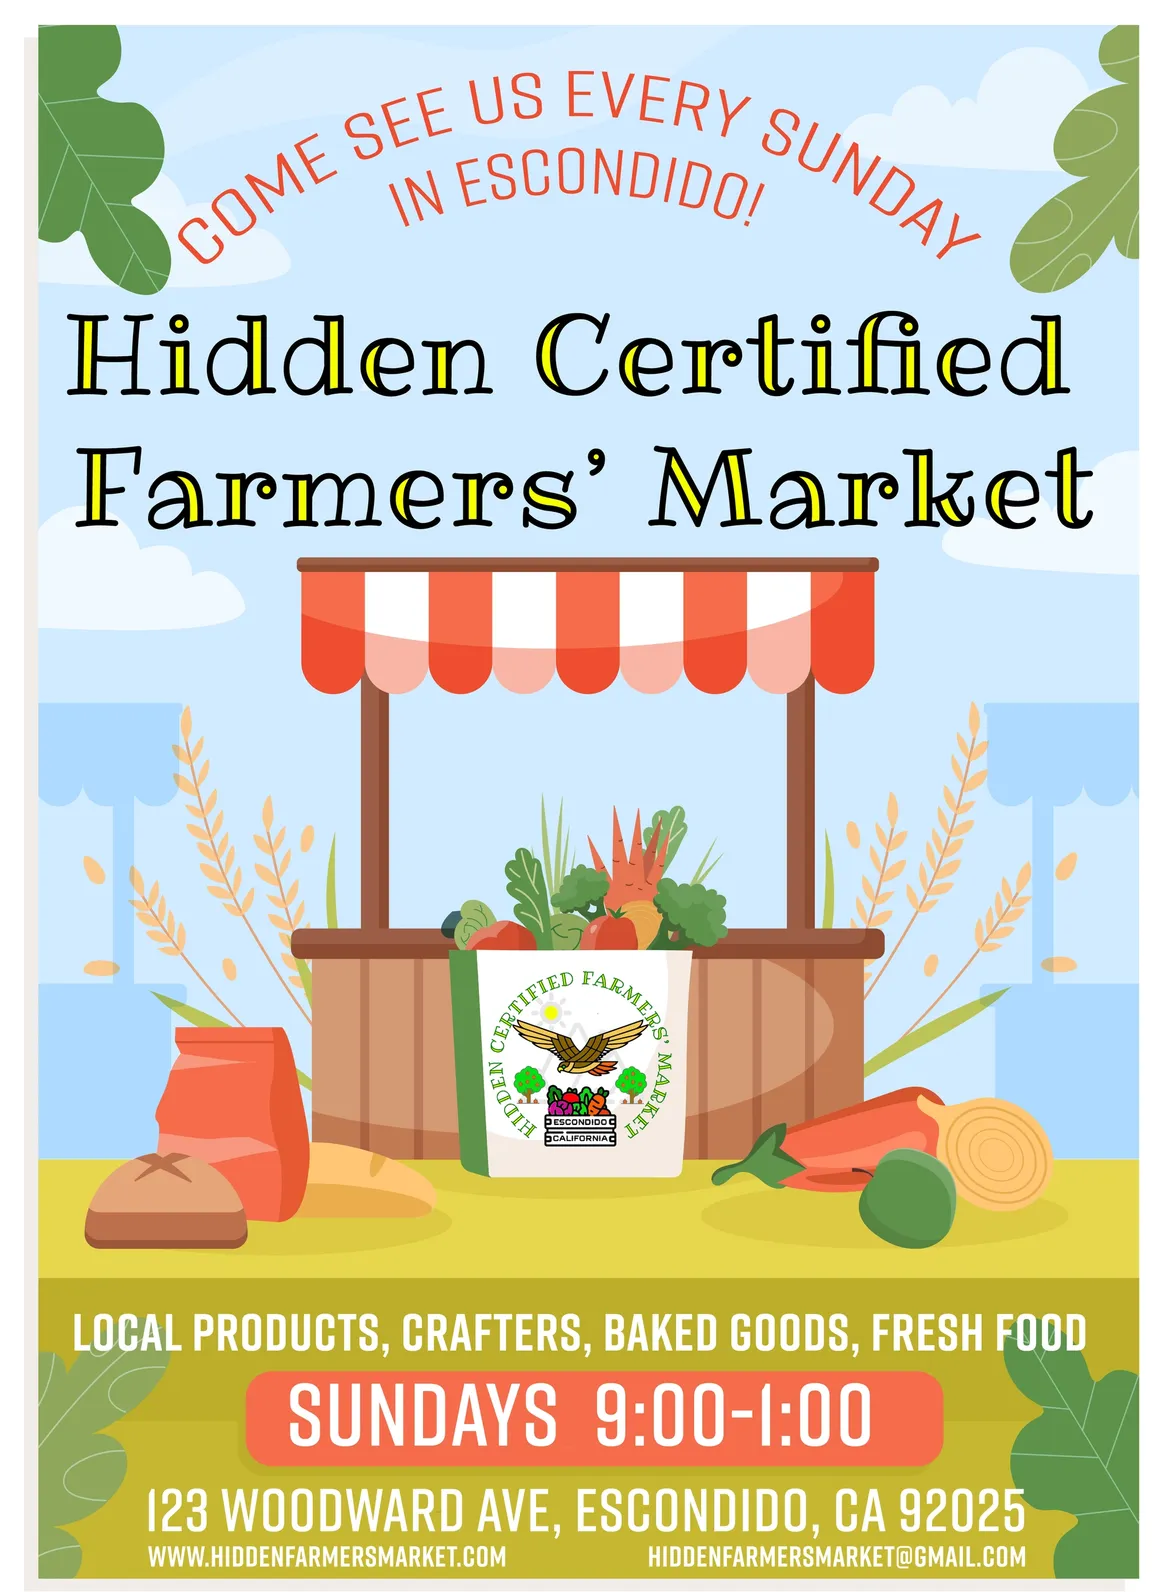 Hidden Certified Farmers Market